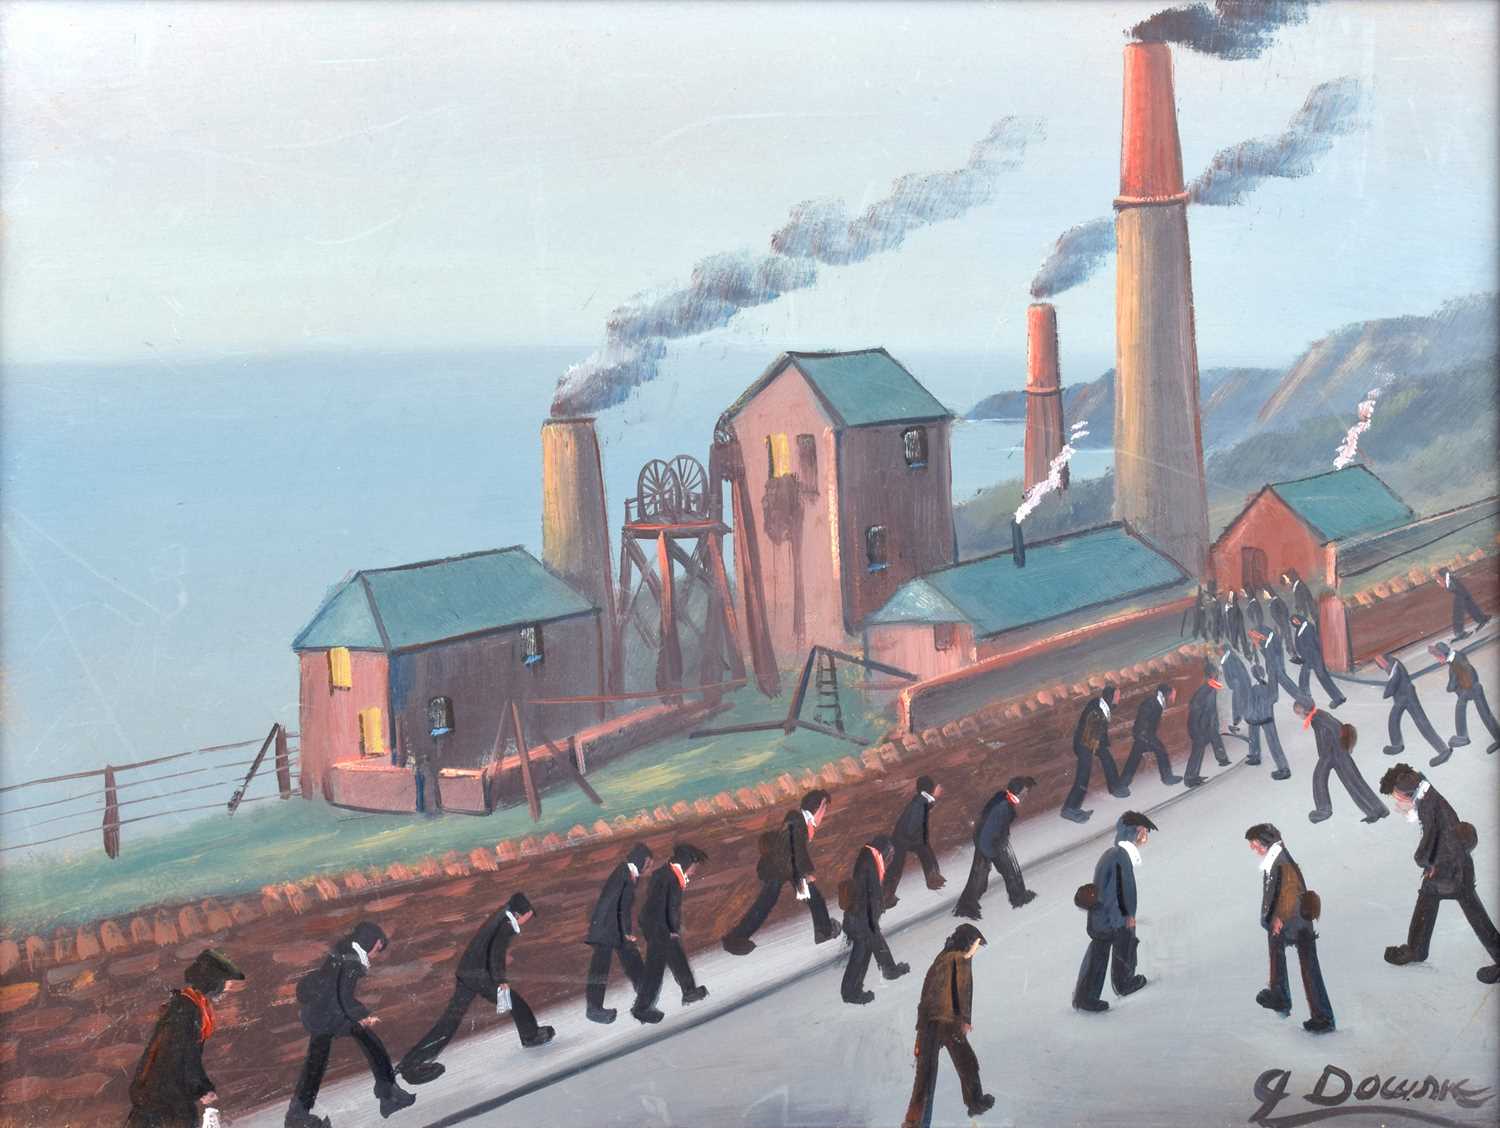 James Downie (British 1949-) "Cornish Miners Going to Work"